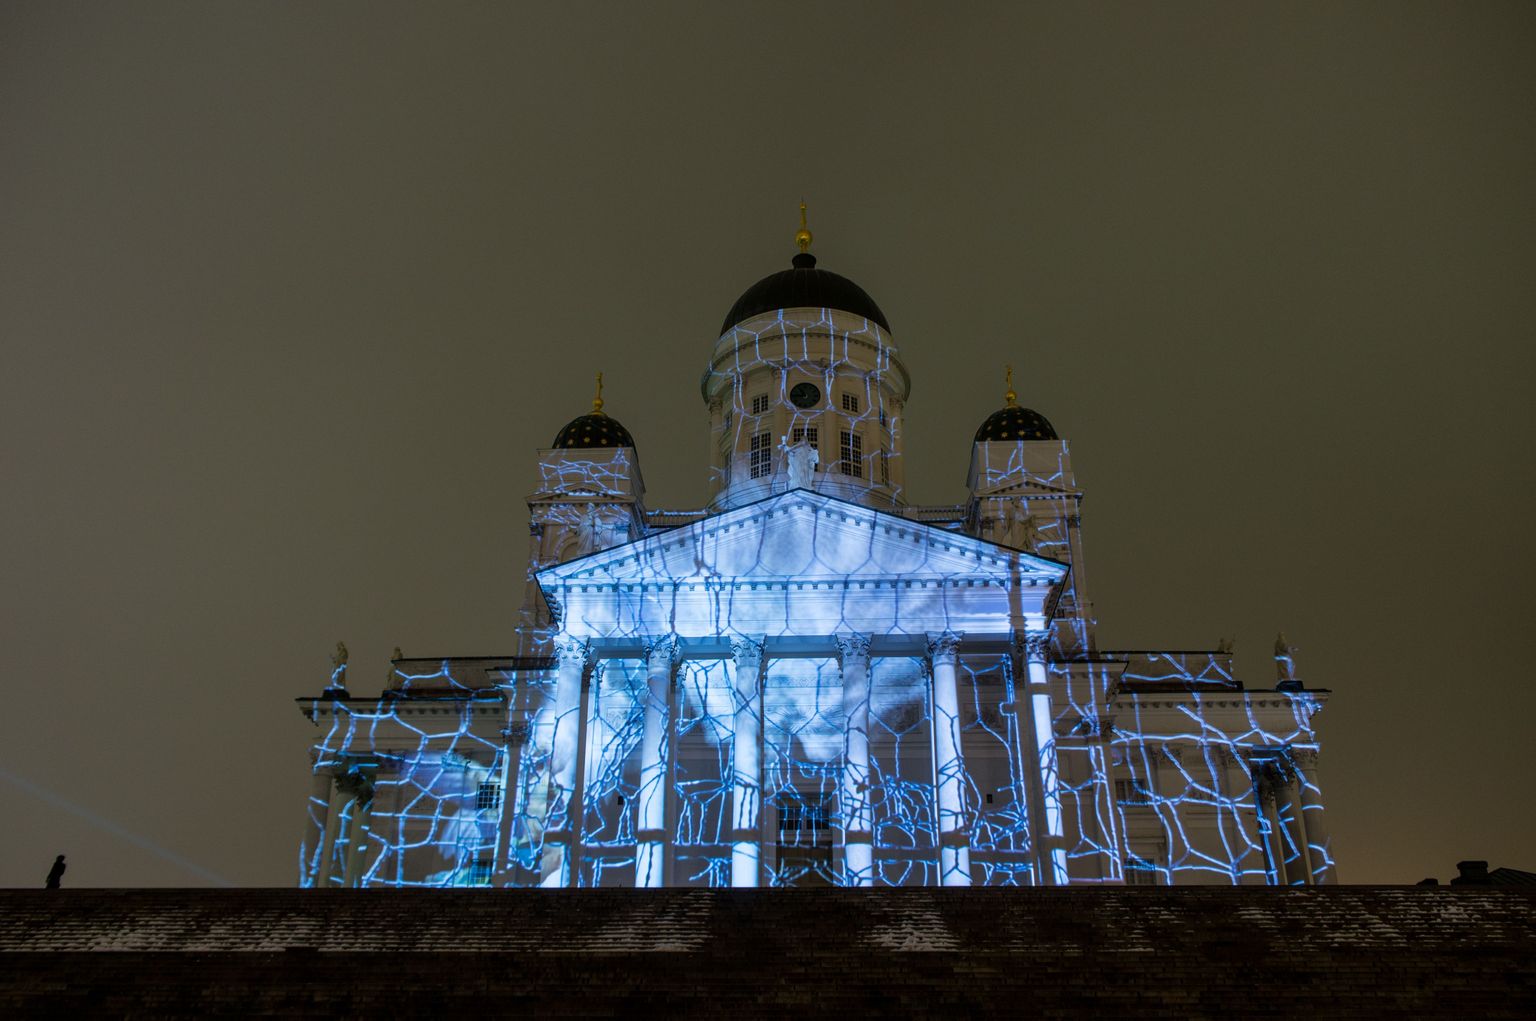 Nii näeb välja Helsingi toomkirik valgusfestivali ajal.